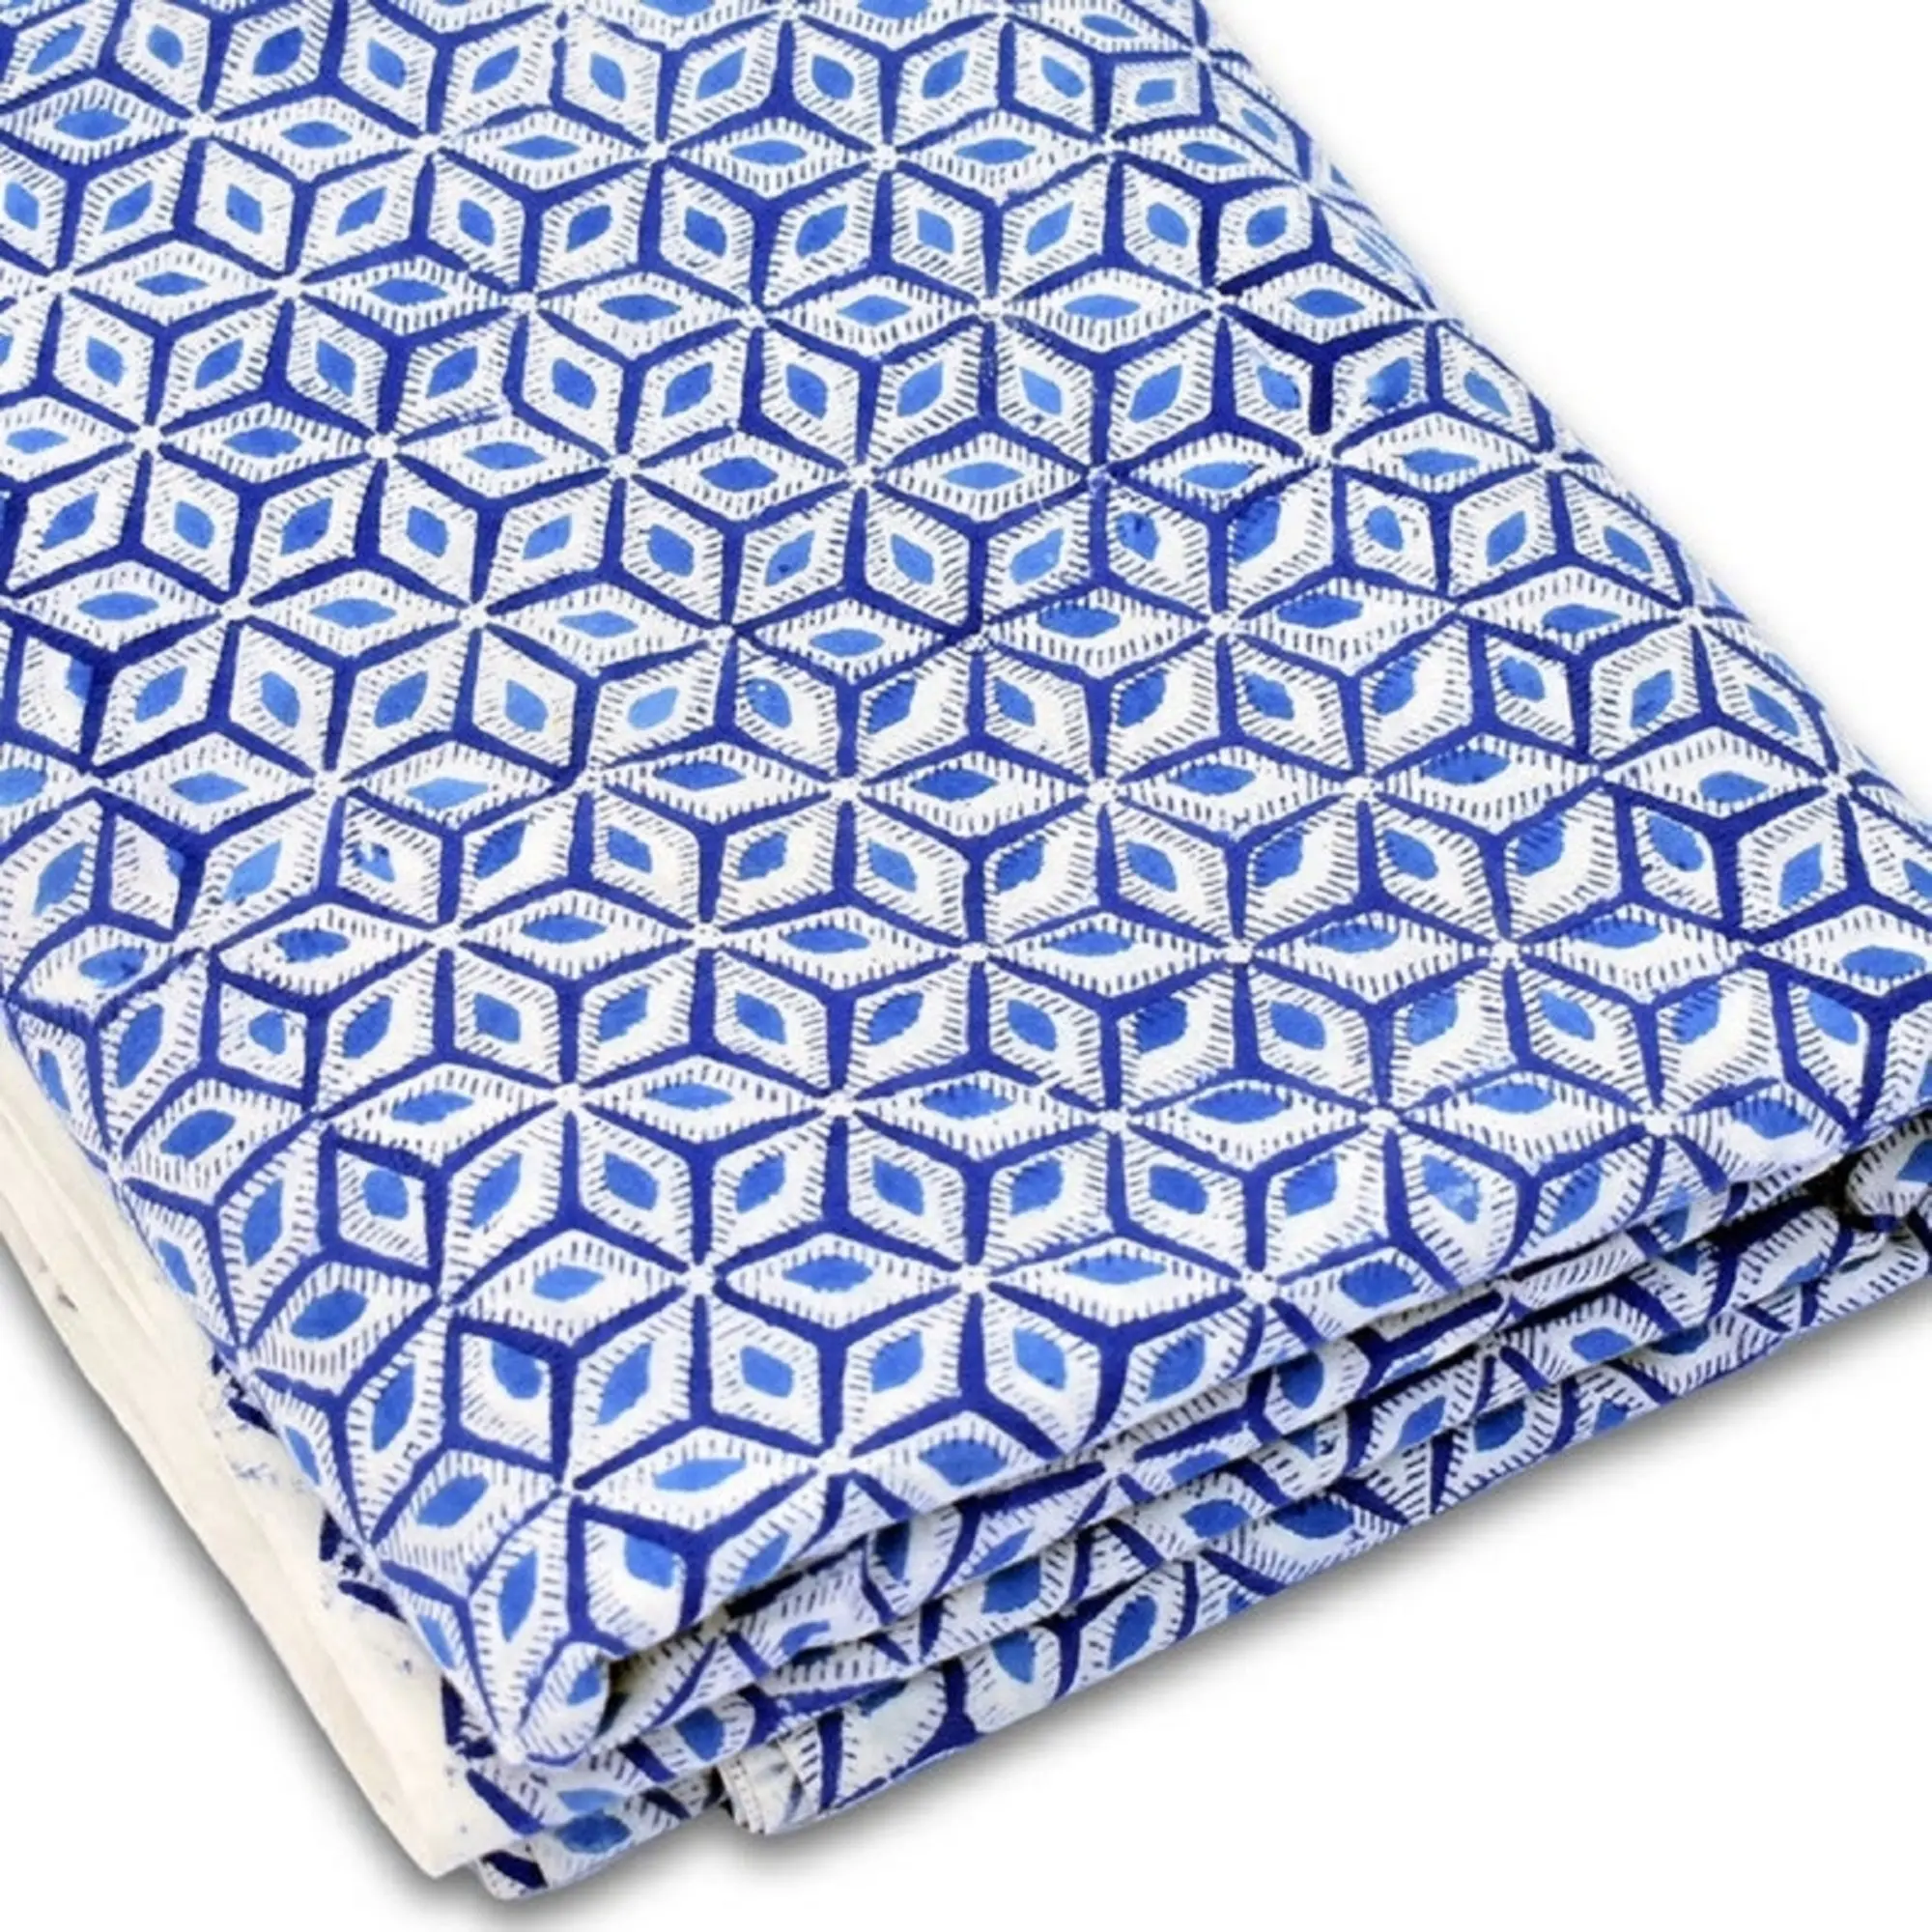 Blaue Farbe Geometrisch bedruckte hand gefertigte block bedruckte Stoffe 100% Baumwolle Bio Vintage Näh stoff Kleidungs stücke Herstellung Kleider